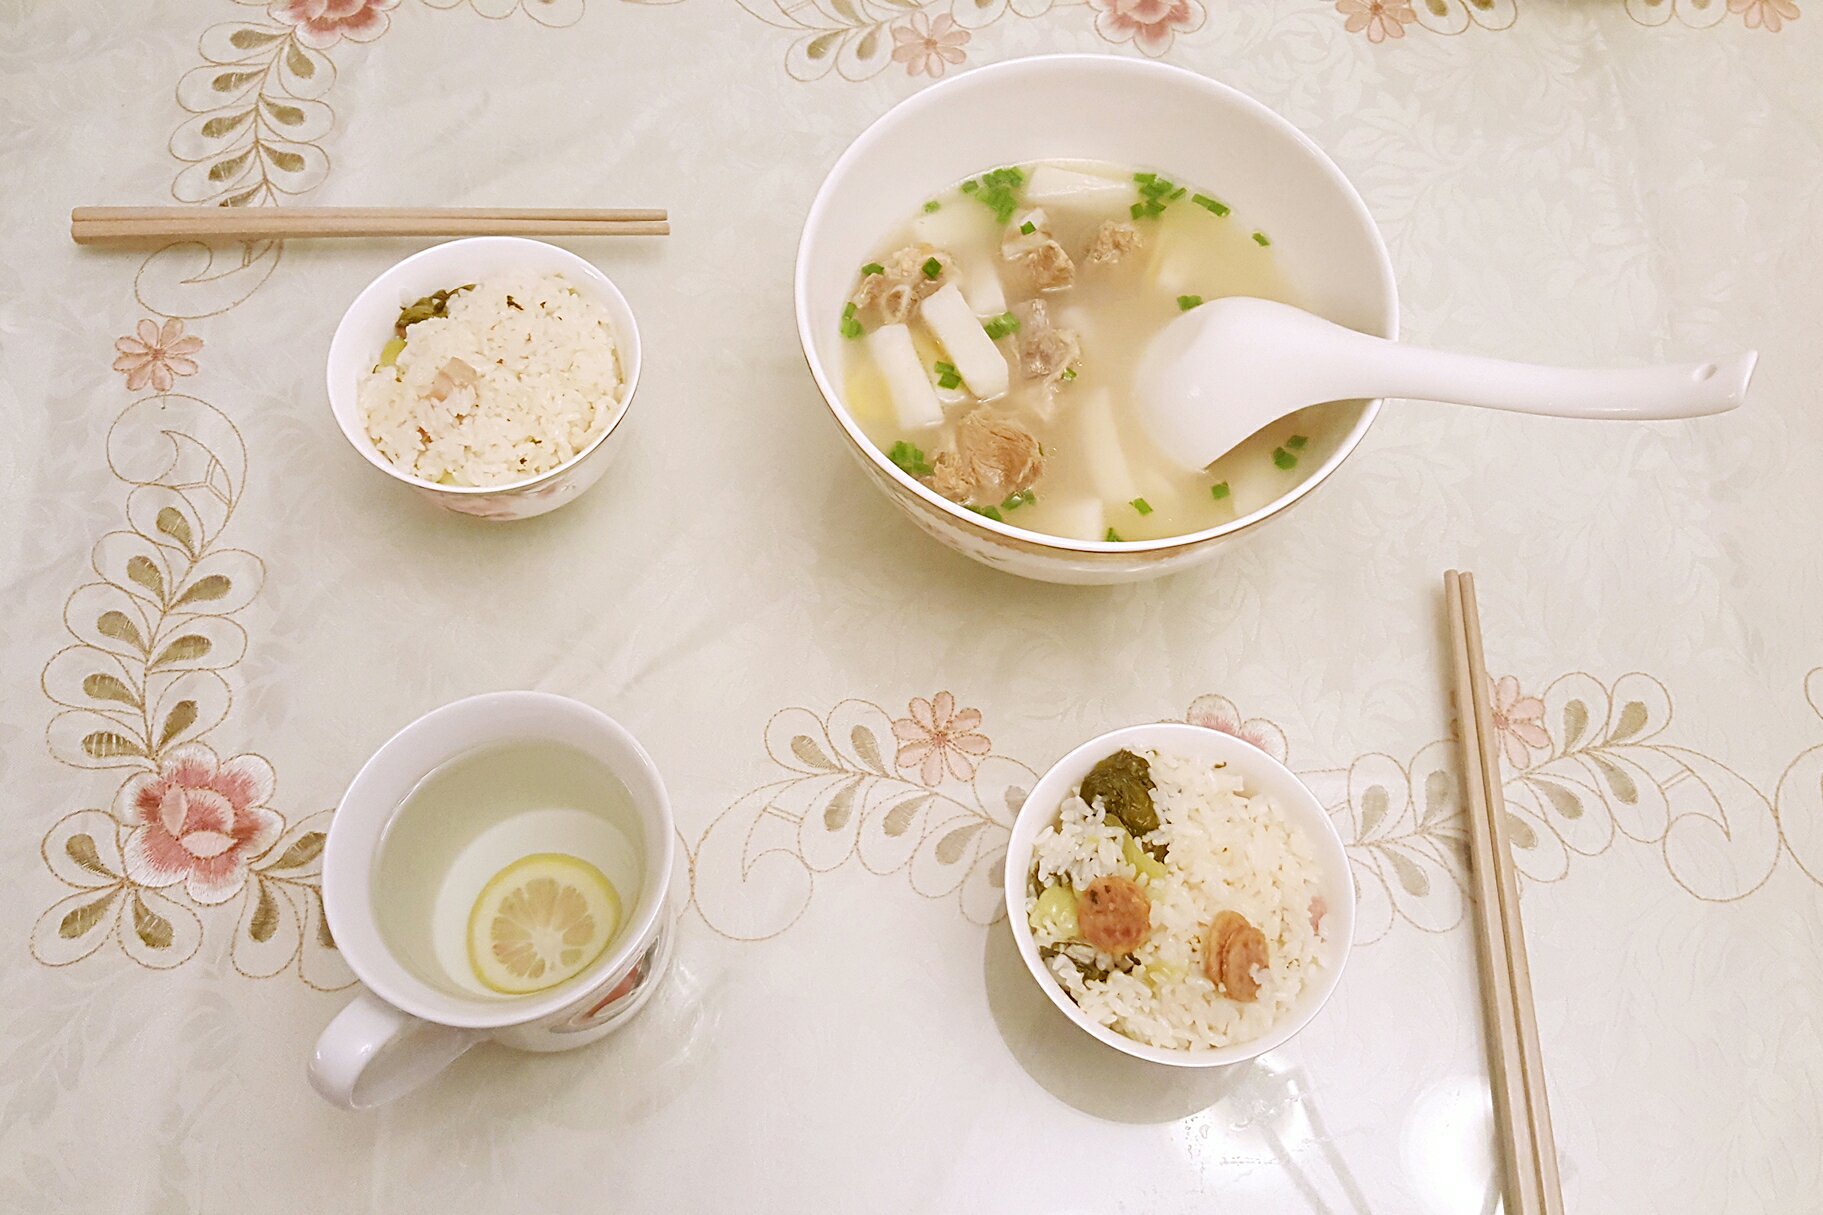 上海菜饭/上海咸酸饭（电饭煲版）